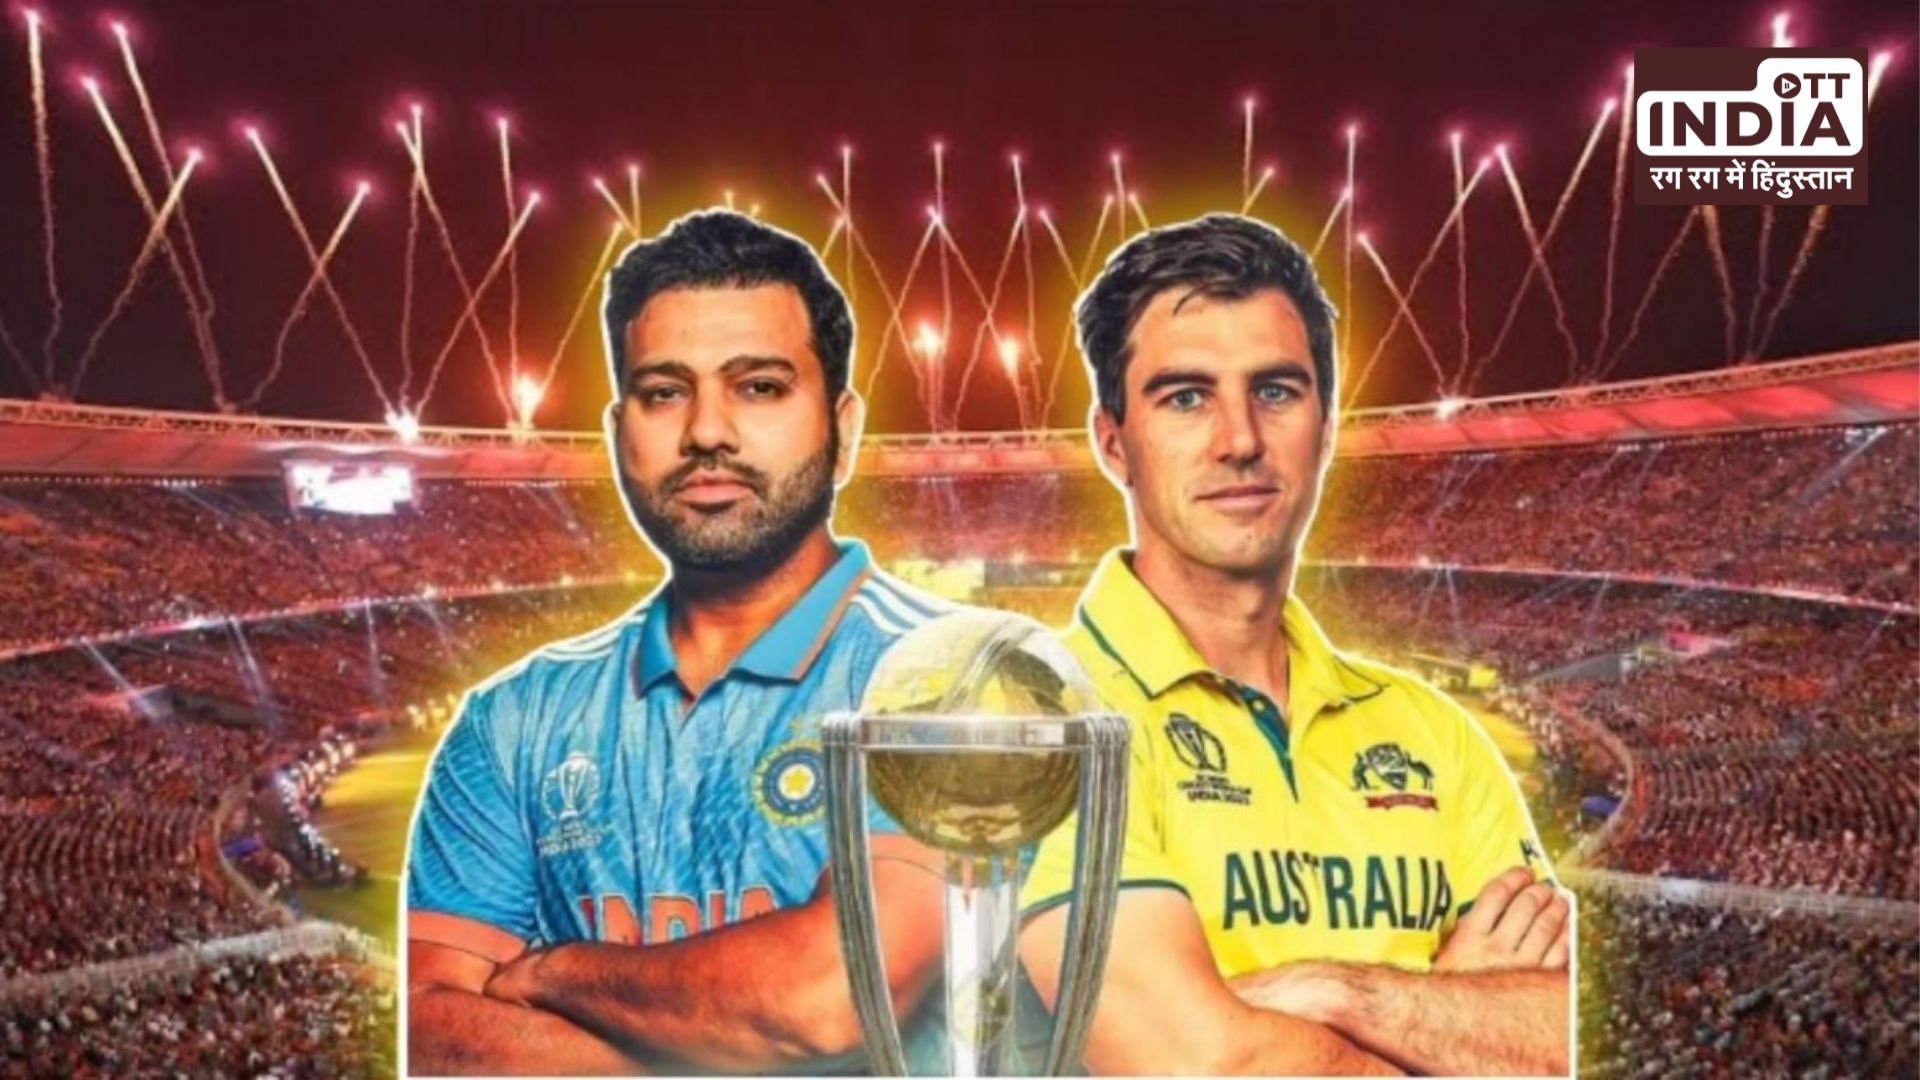 ICC World Cup Final के लिए Google ने बनाया स्पेशल Doodle, खिलाड़ियों को दी बधाई…